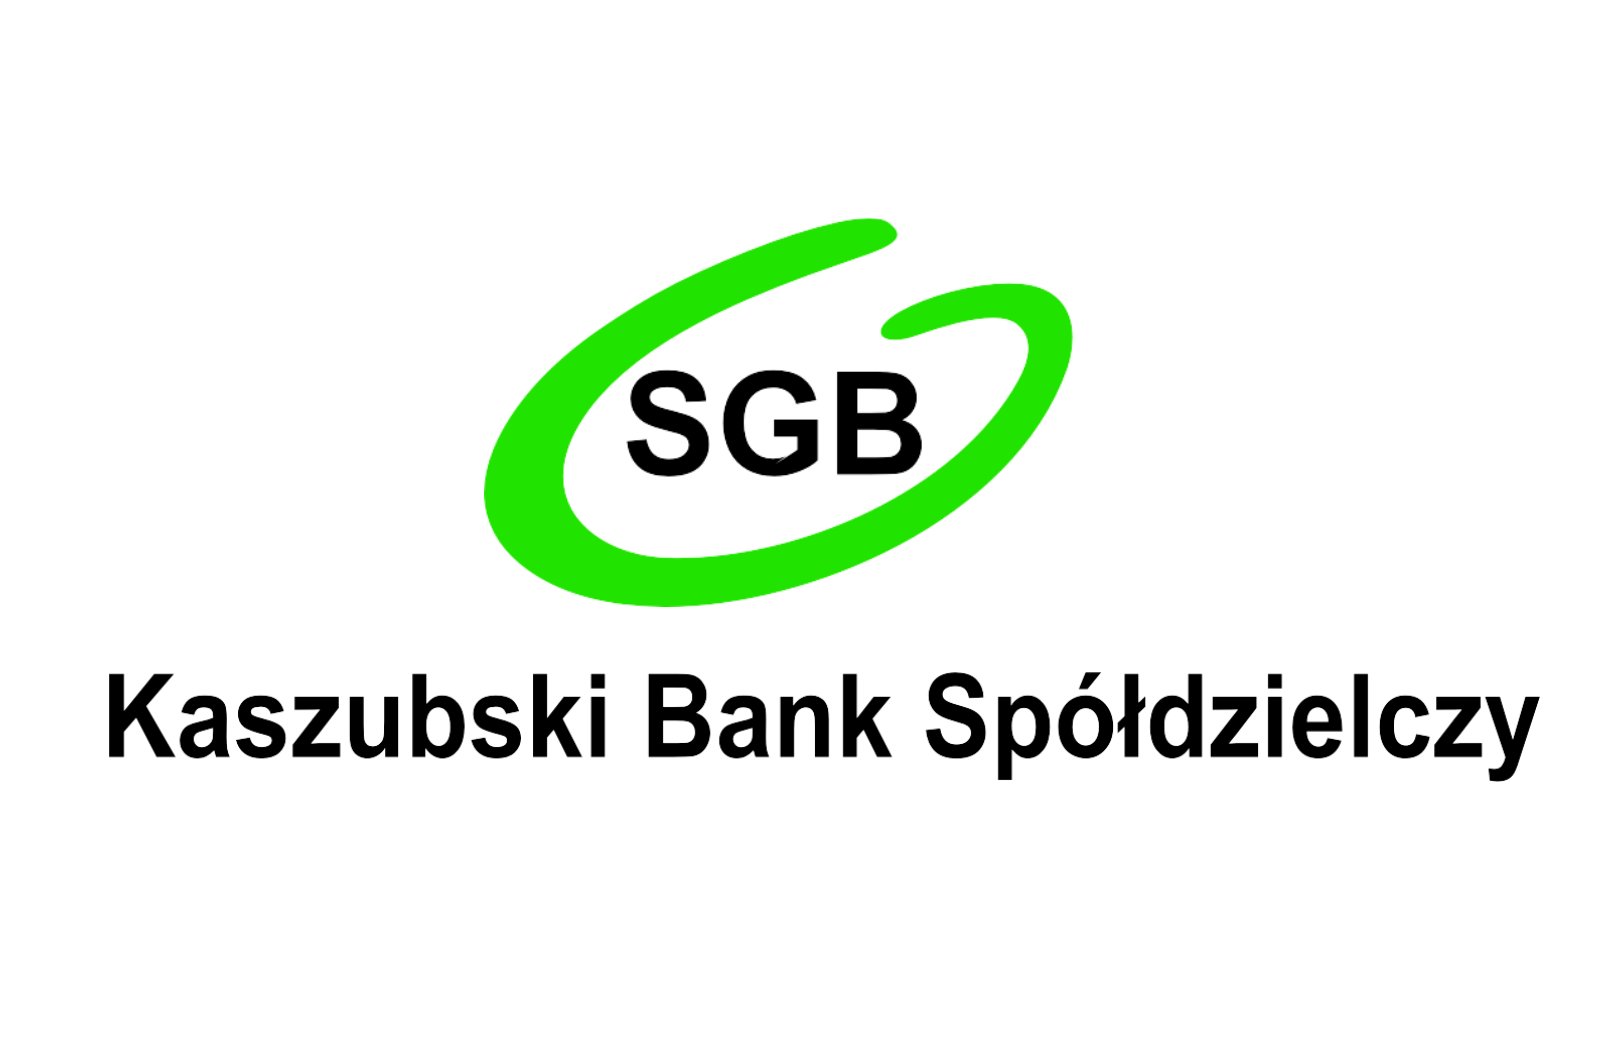 Kaszubski Bank Spółdzielczy logo